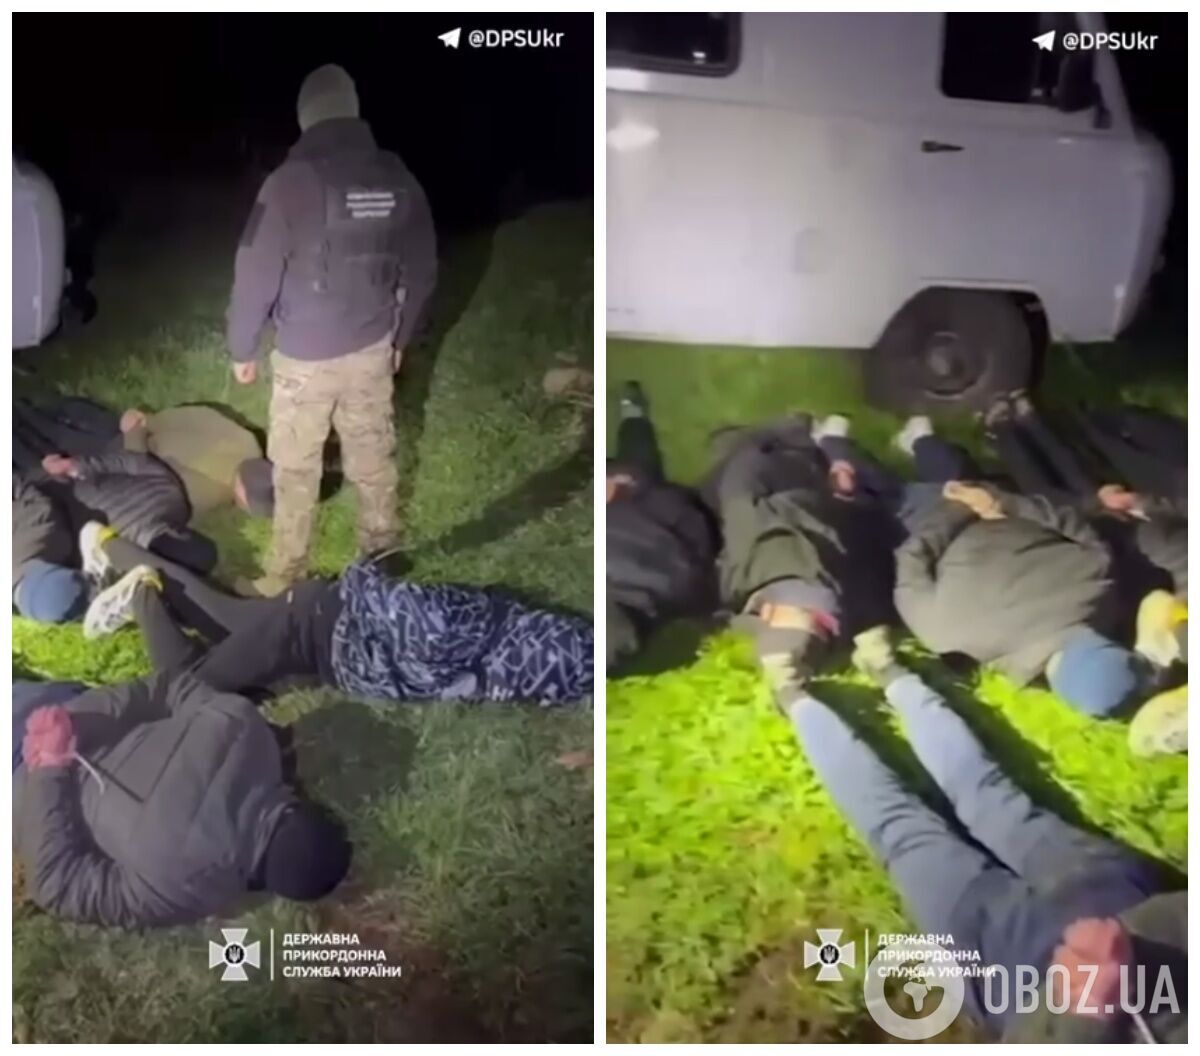 Затримання громадян, які намагалися виїхати із України. queiueiqutieeant